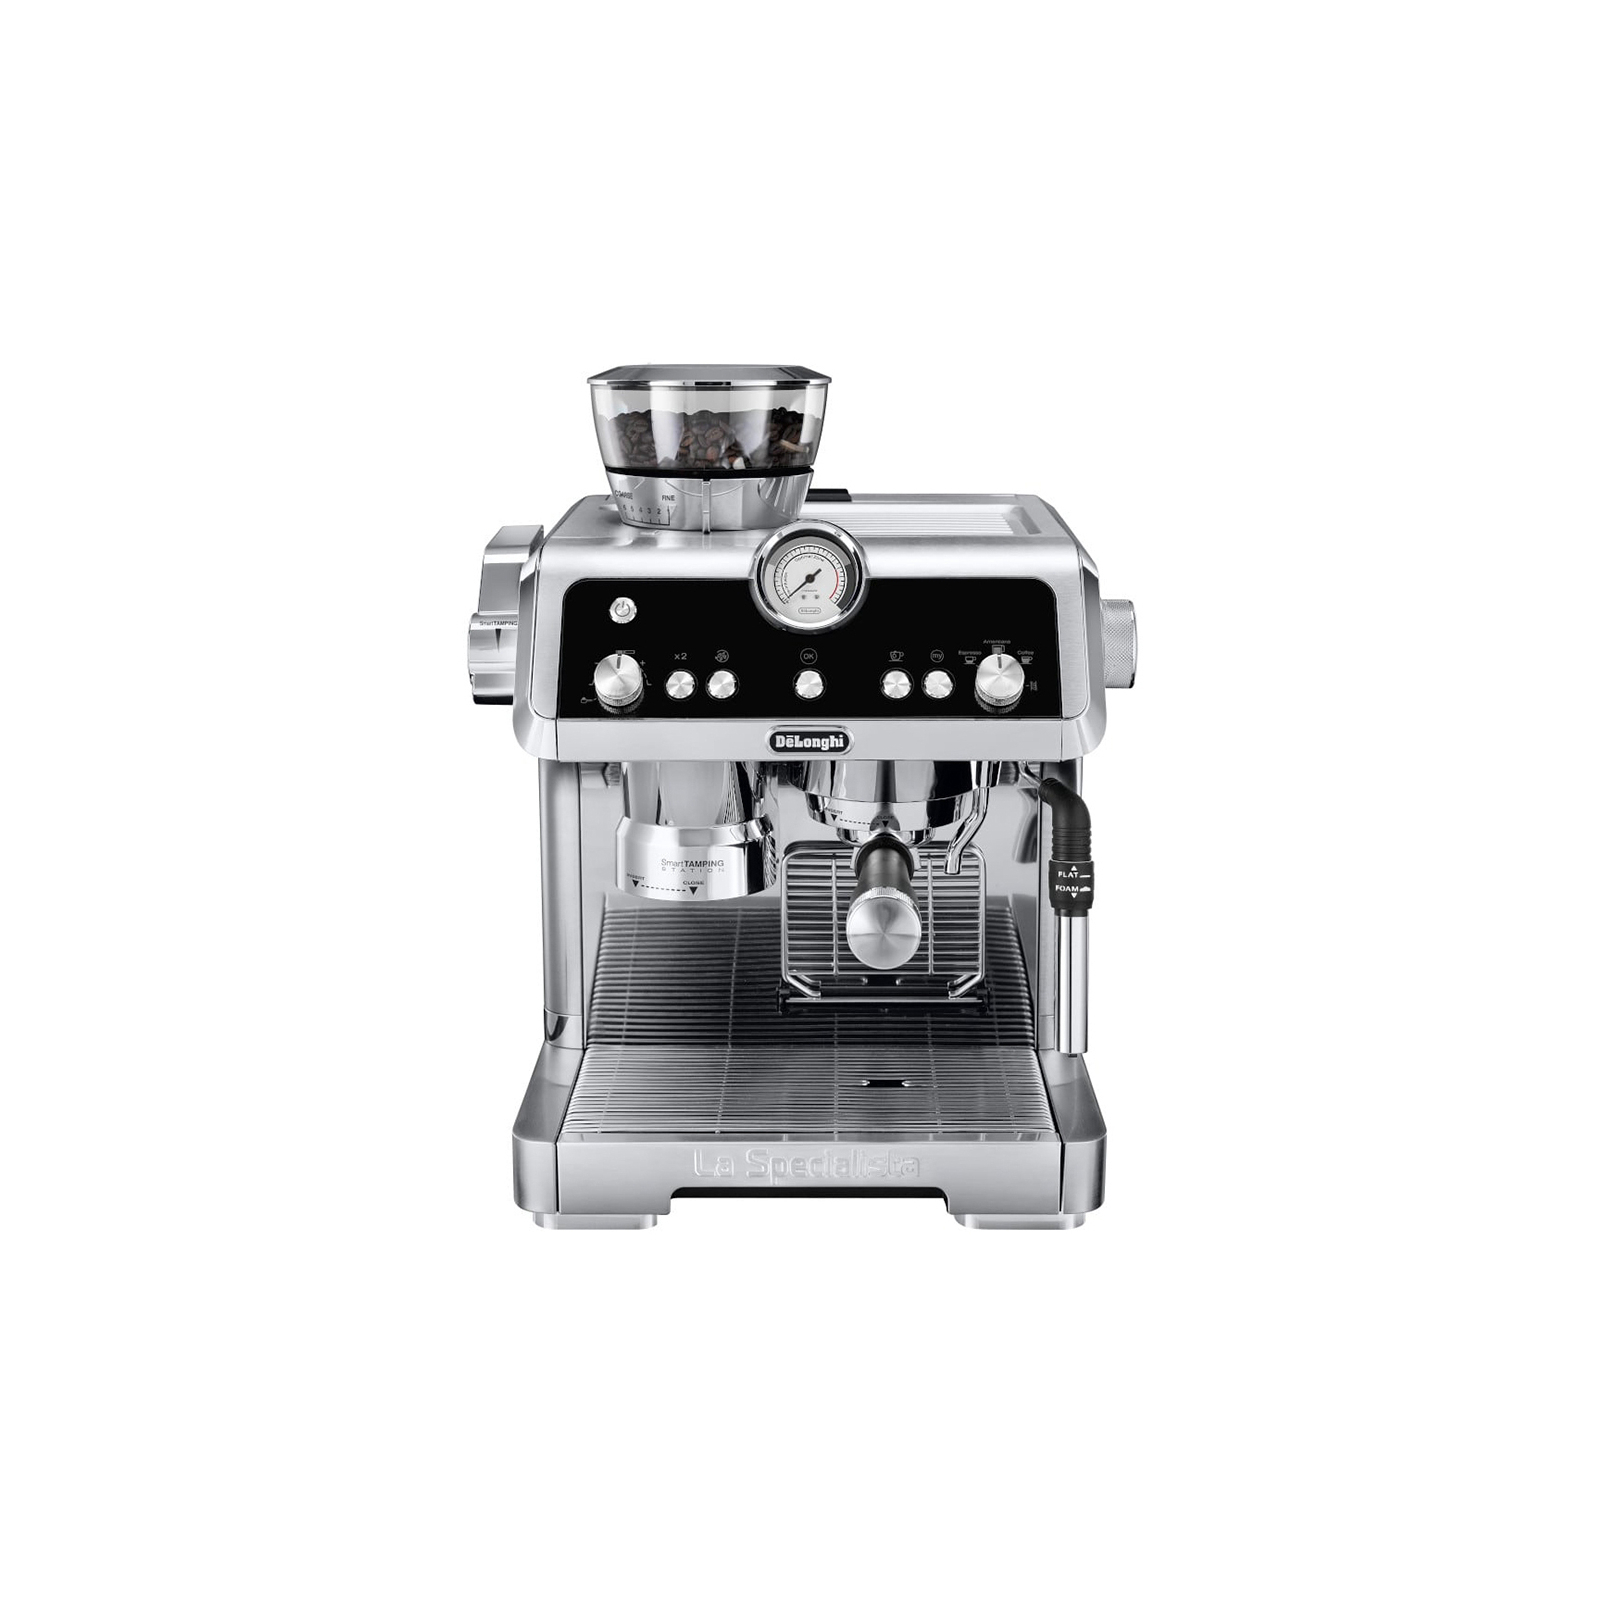 Рожковая кофеварка эспрессо DeLonghi EC 9335 M La Specialista (EC9335M)